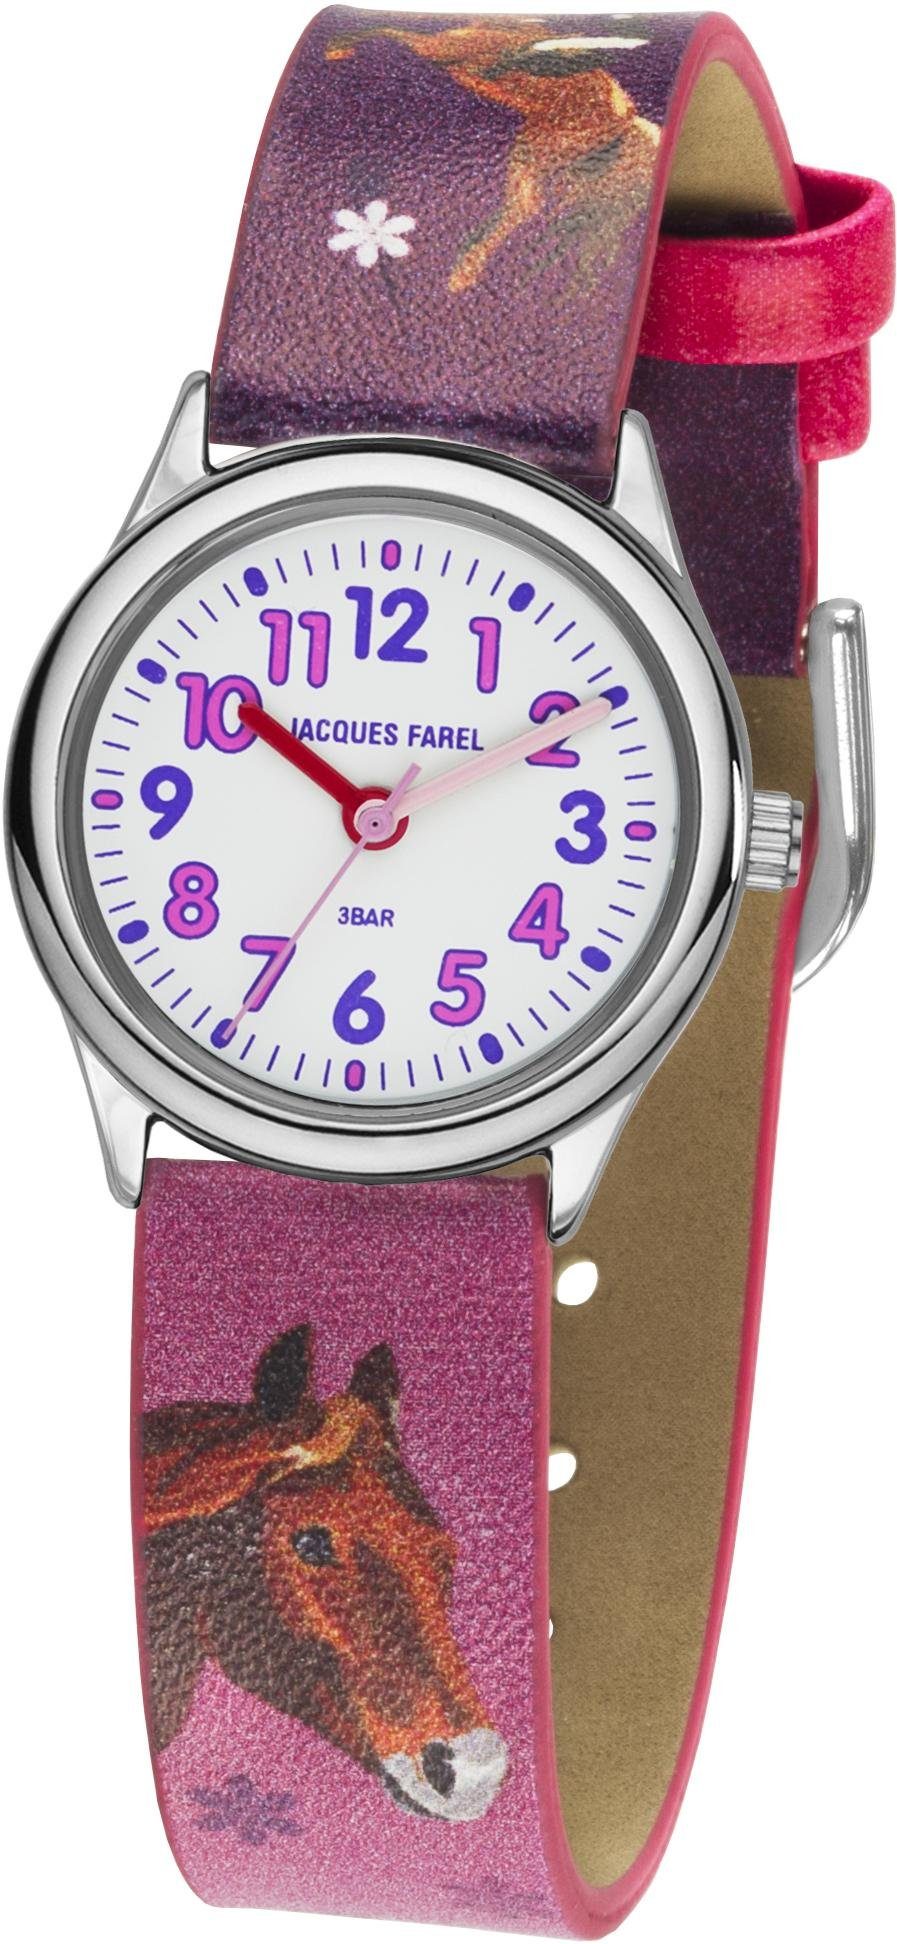 Jacques Farel Quarzuhr HCC 543, mit Pferdemotiv, Armbanduhr, Kinderuhr, Mädchenuhr, ideal auch als Geschenk